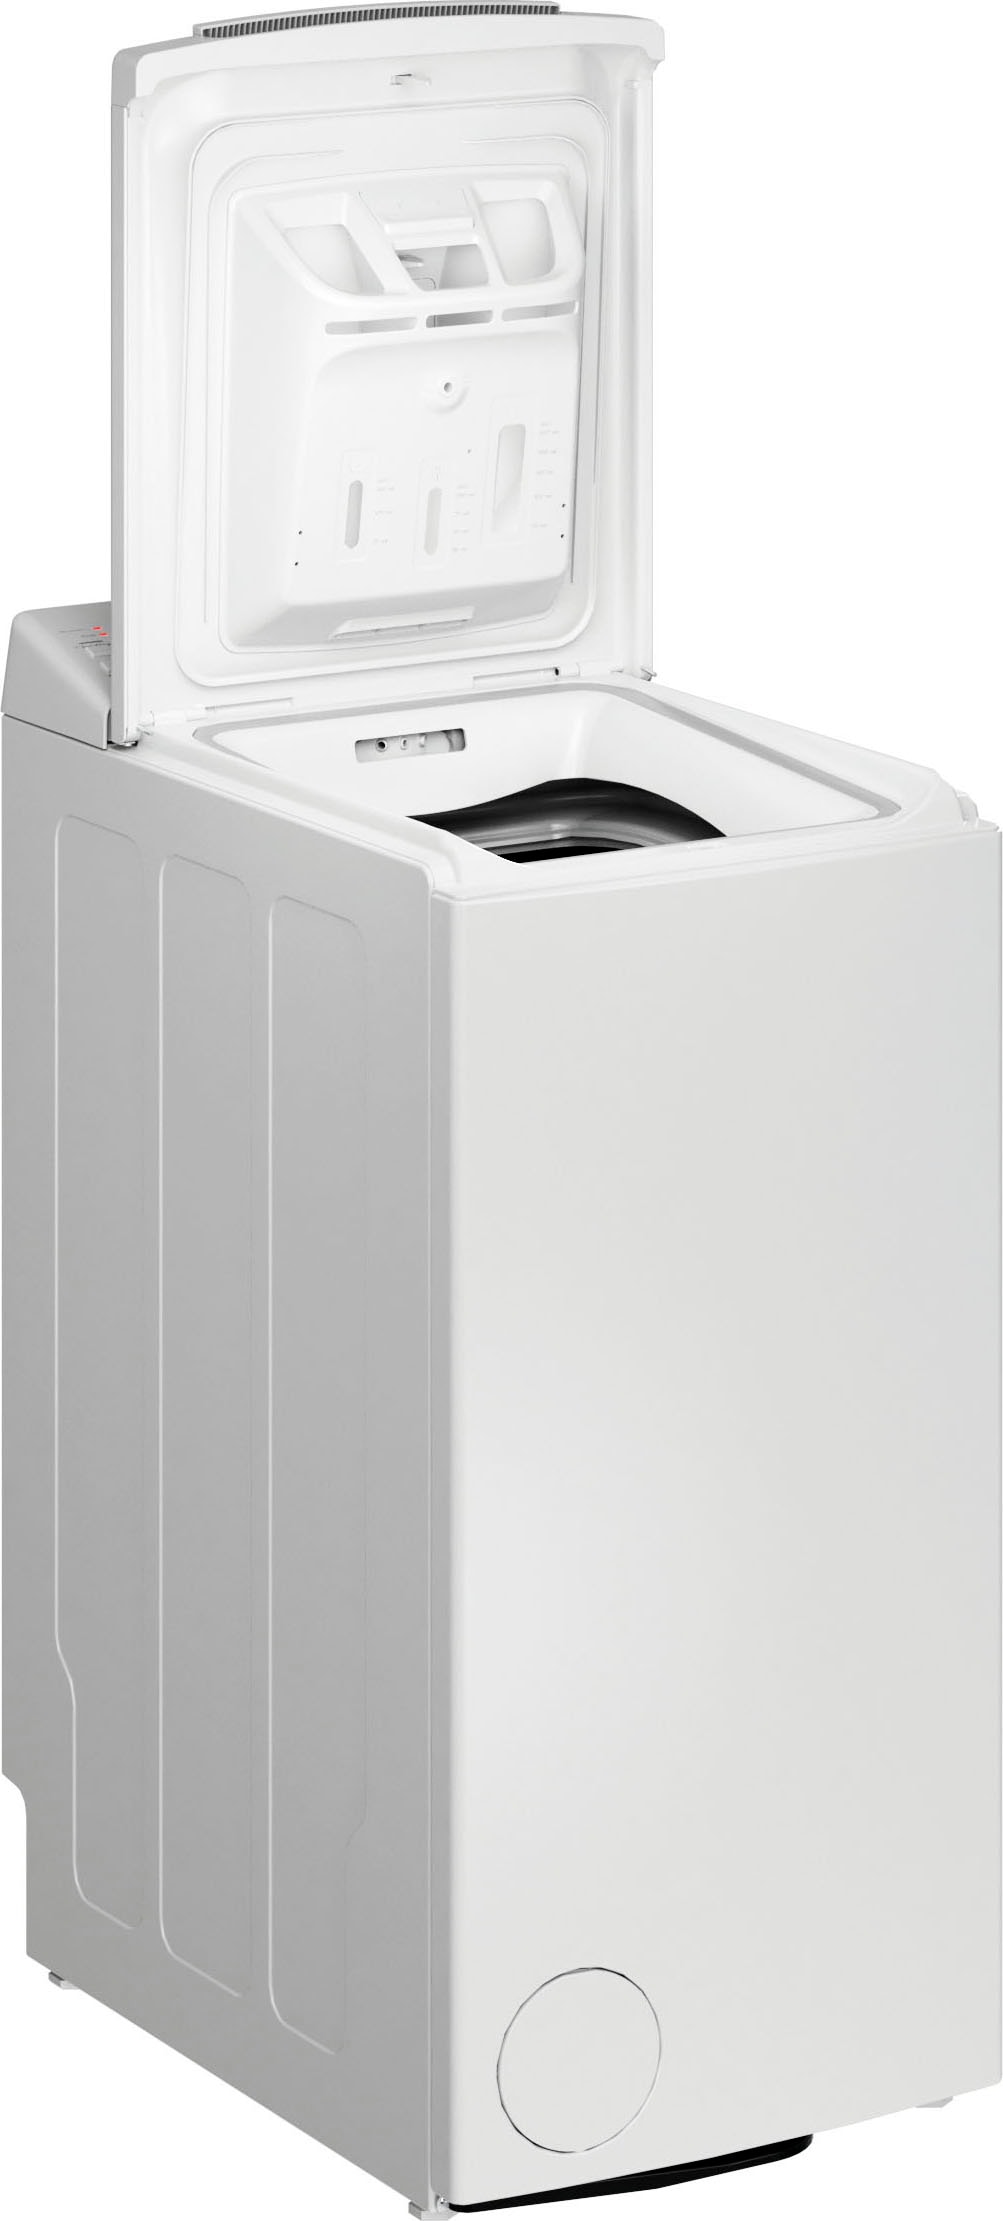 BAUKNECHT Waschmaschine Toplader »WMT BK 126 B«, WMT BK 126 B, 6 kg, 1200 U/min